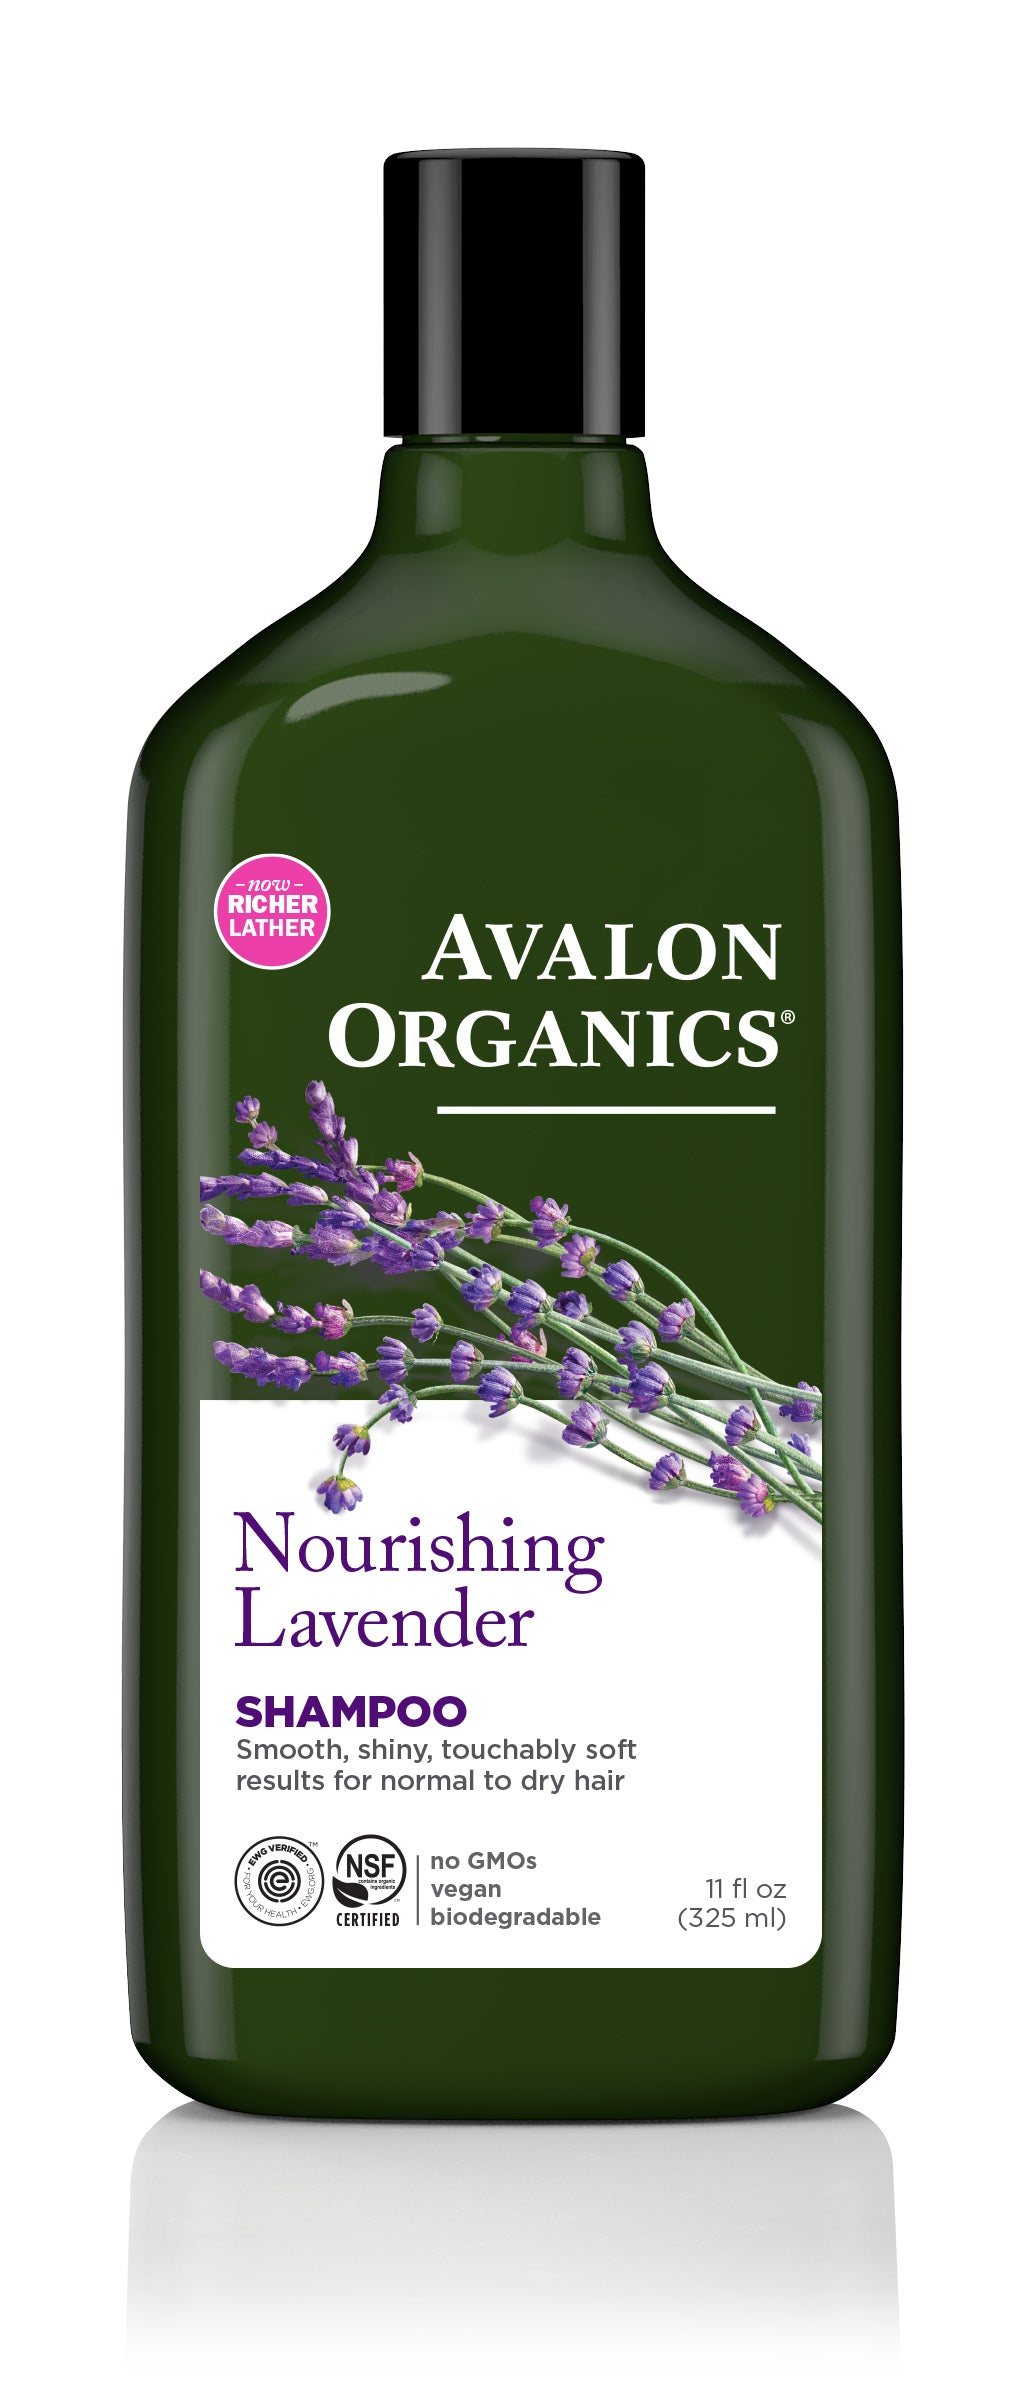 godtgørelse charter dagbog Nourishing Lavender – Avalon Organics